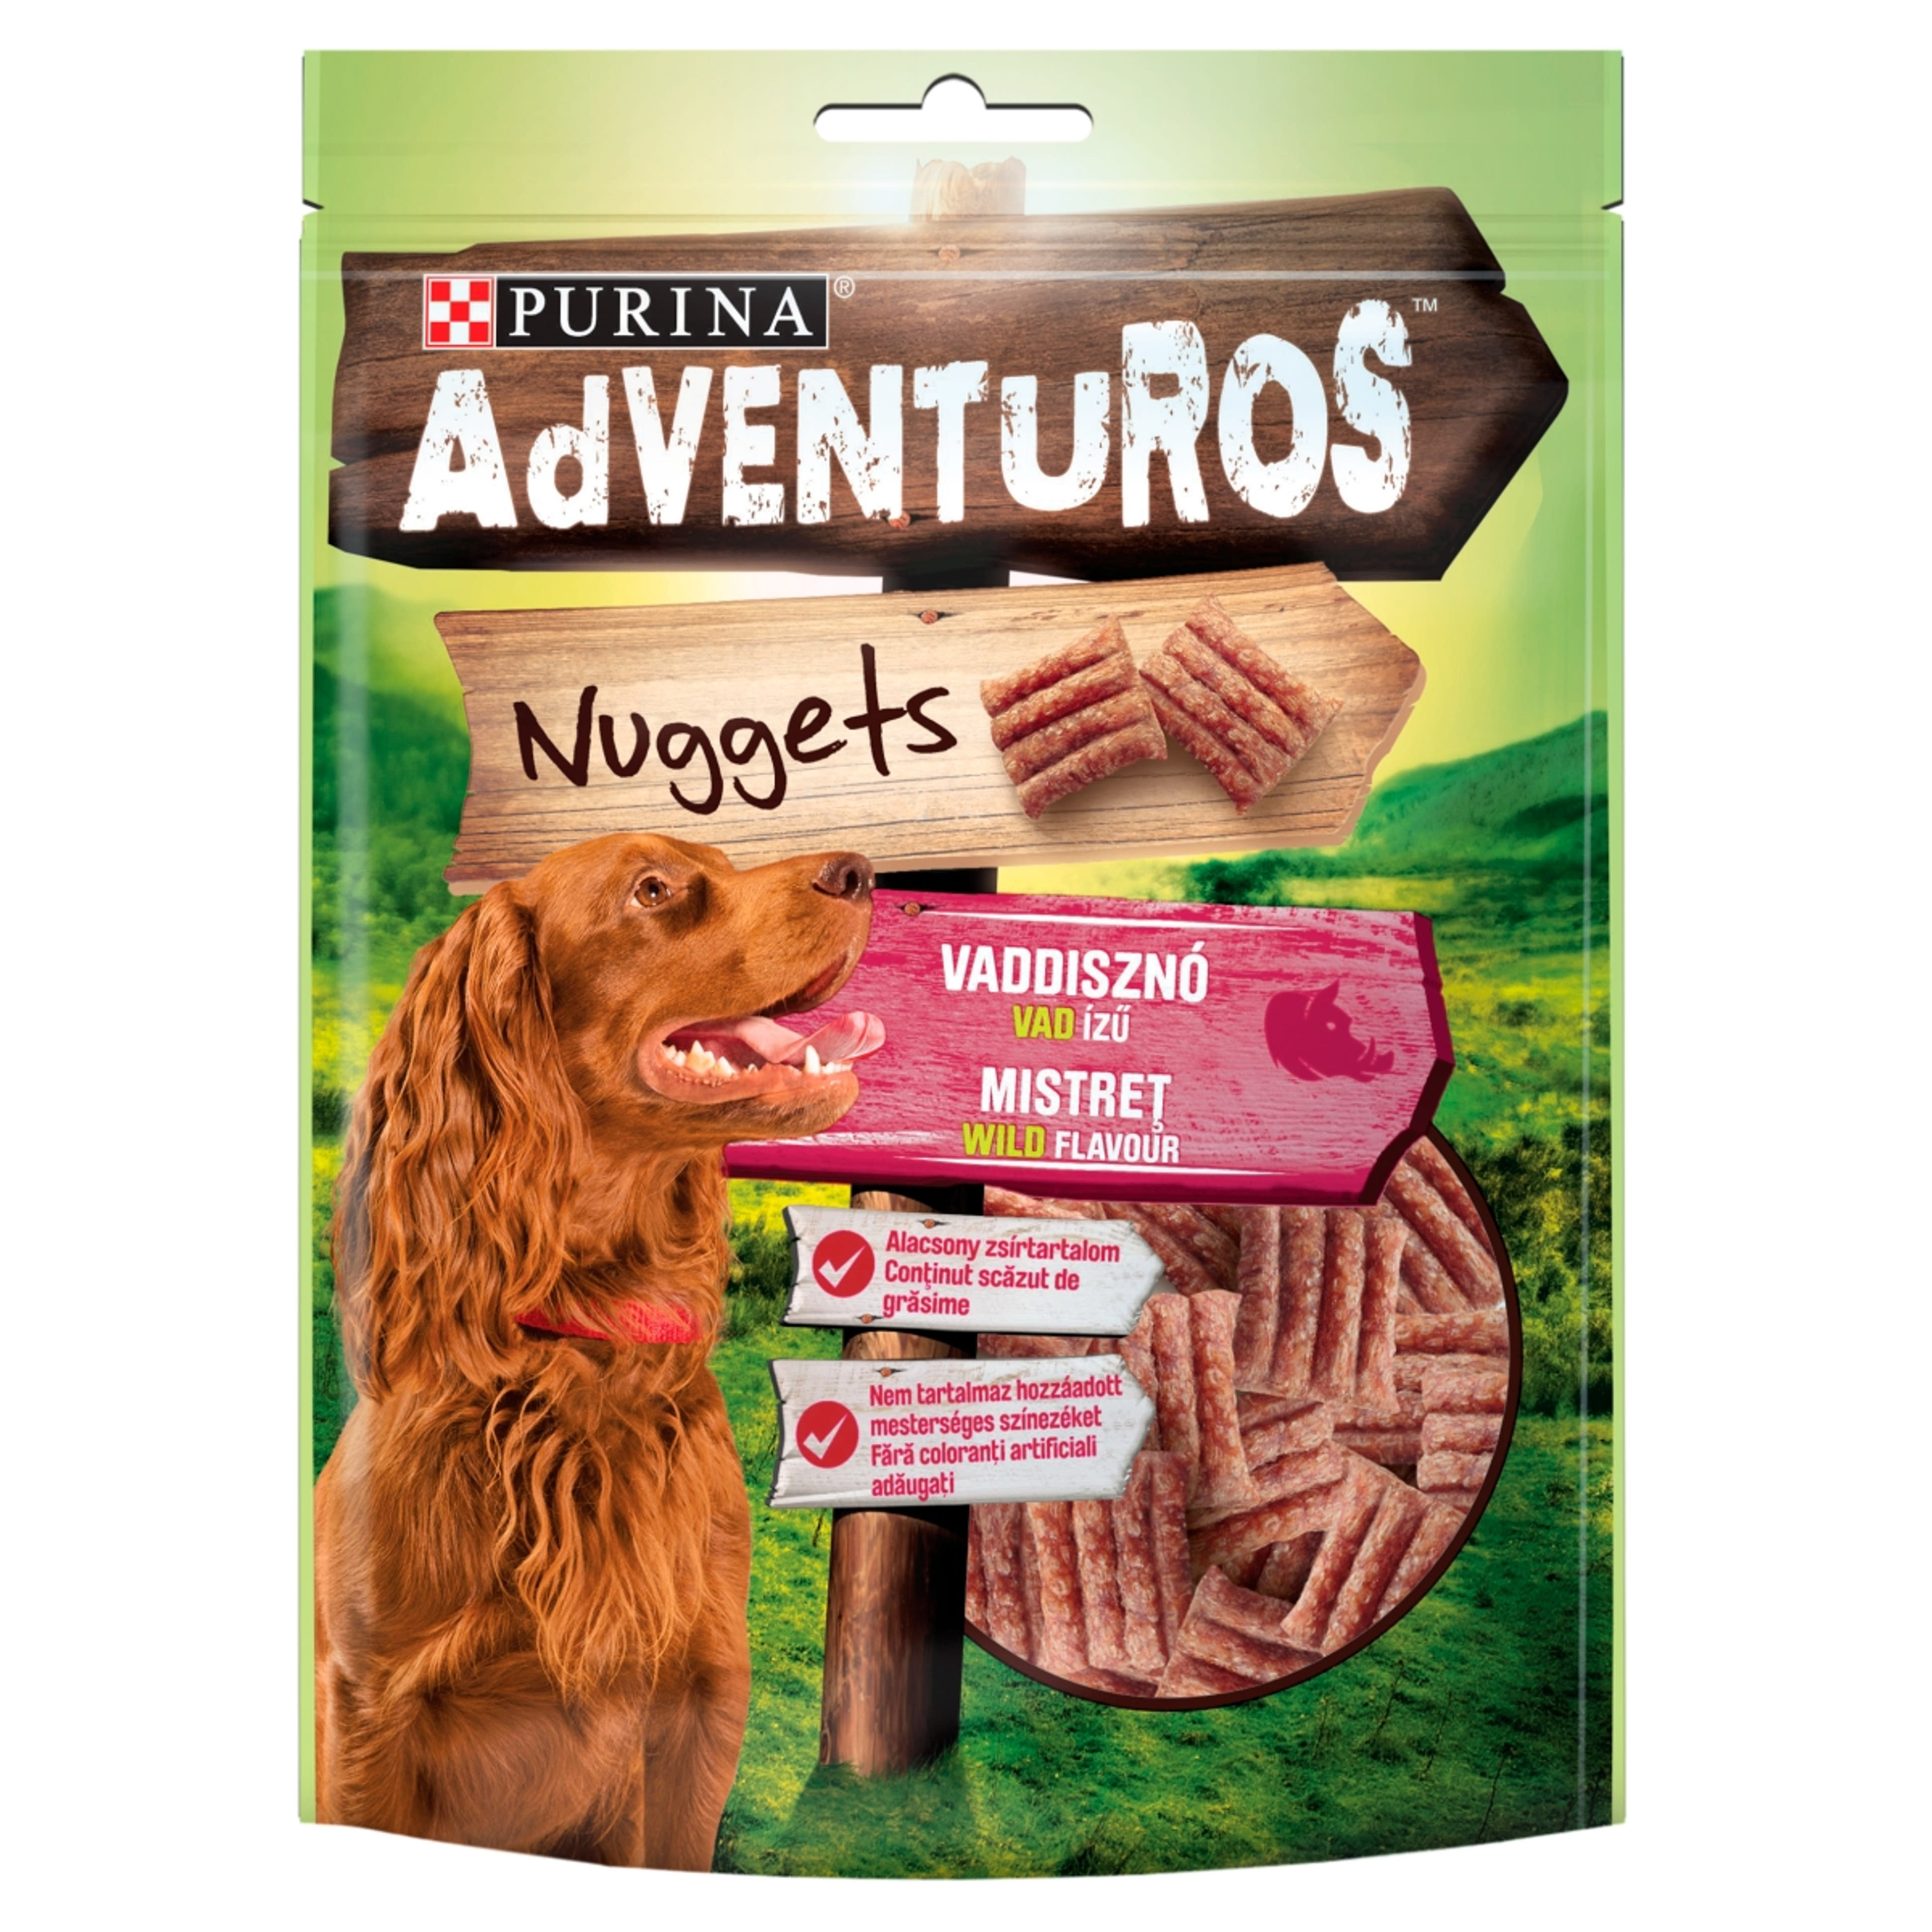 Purina Adventuros Nuggets jutalomfalat kutyáknak, vaddisznó, vad ízű - 90 g